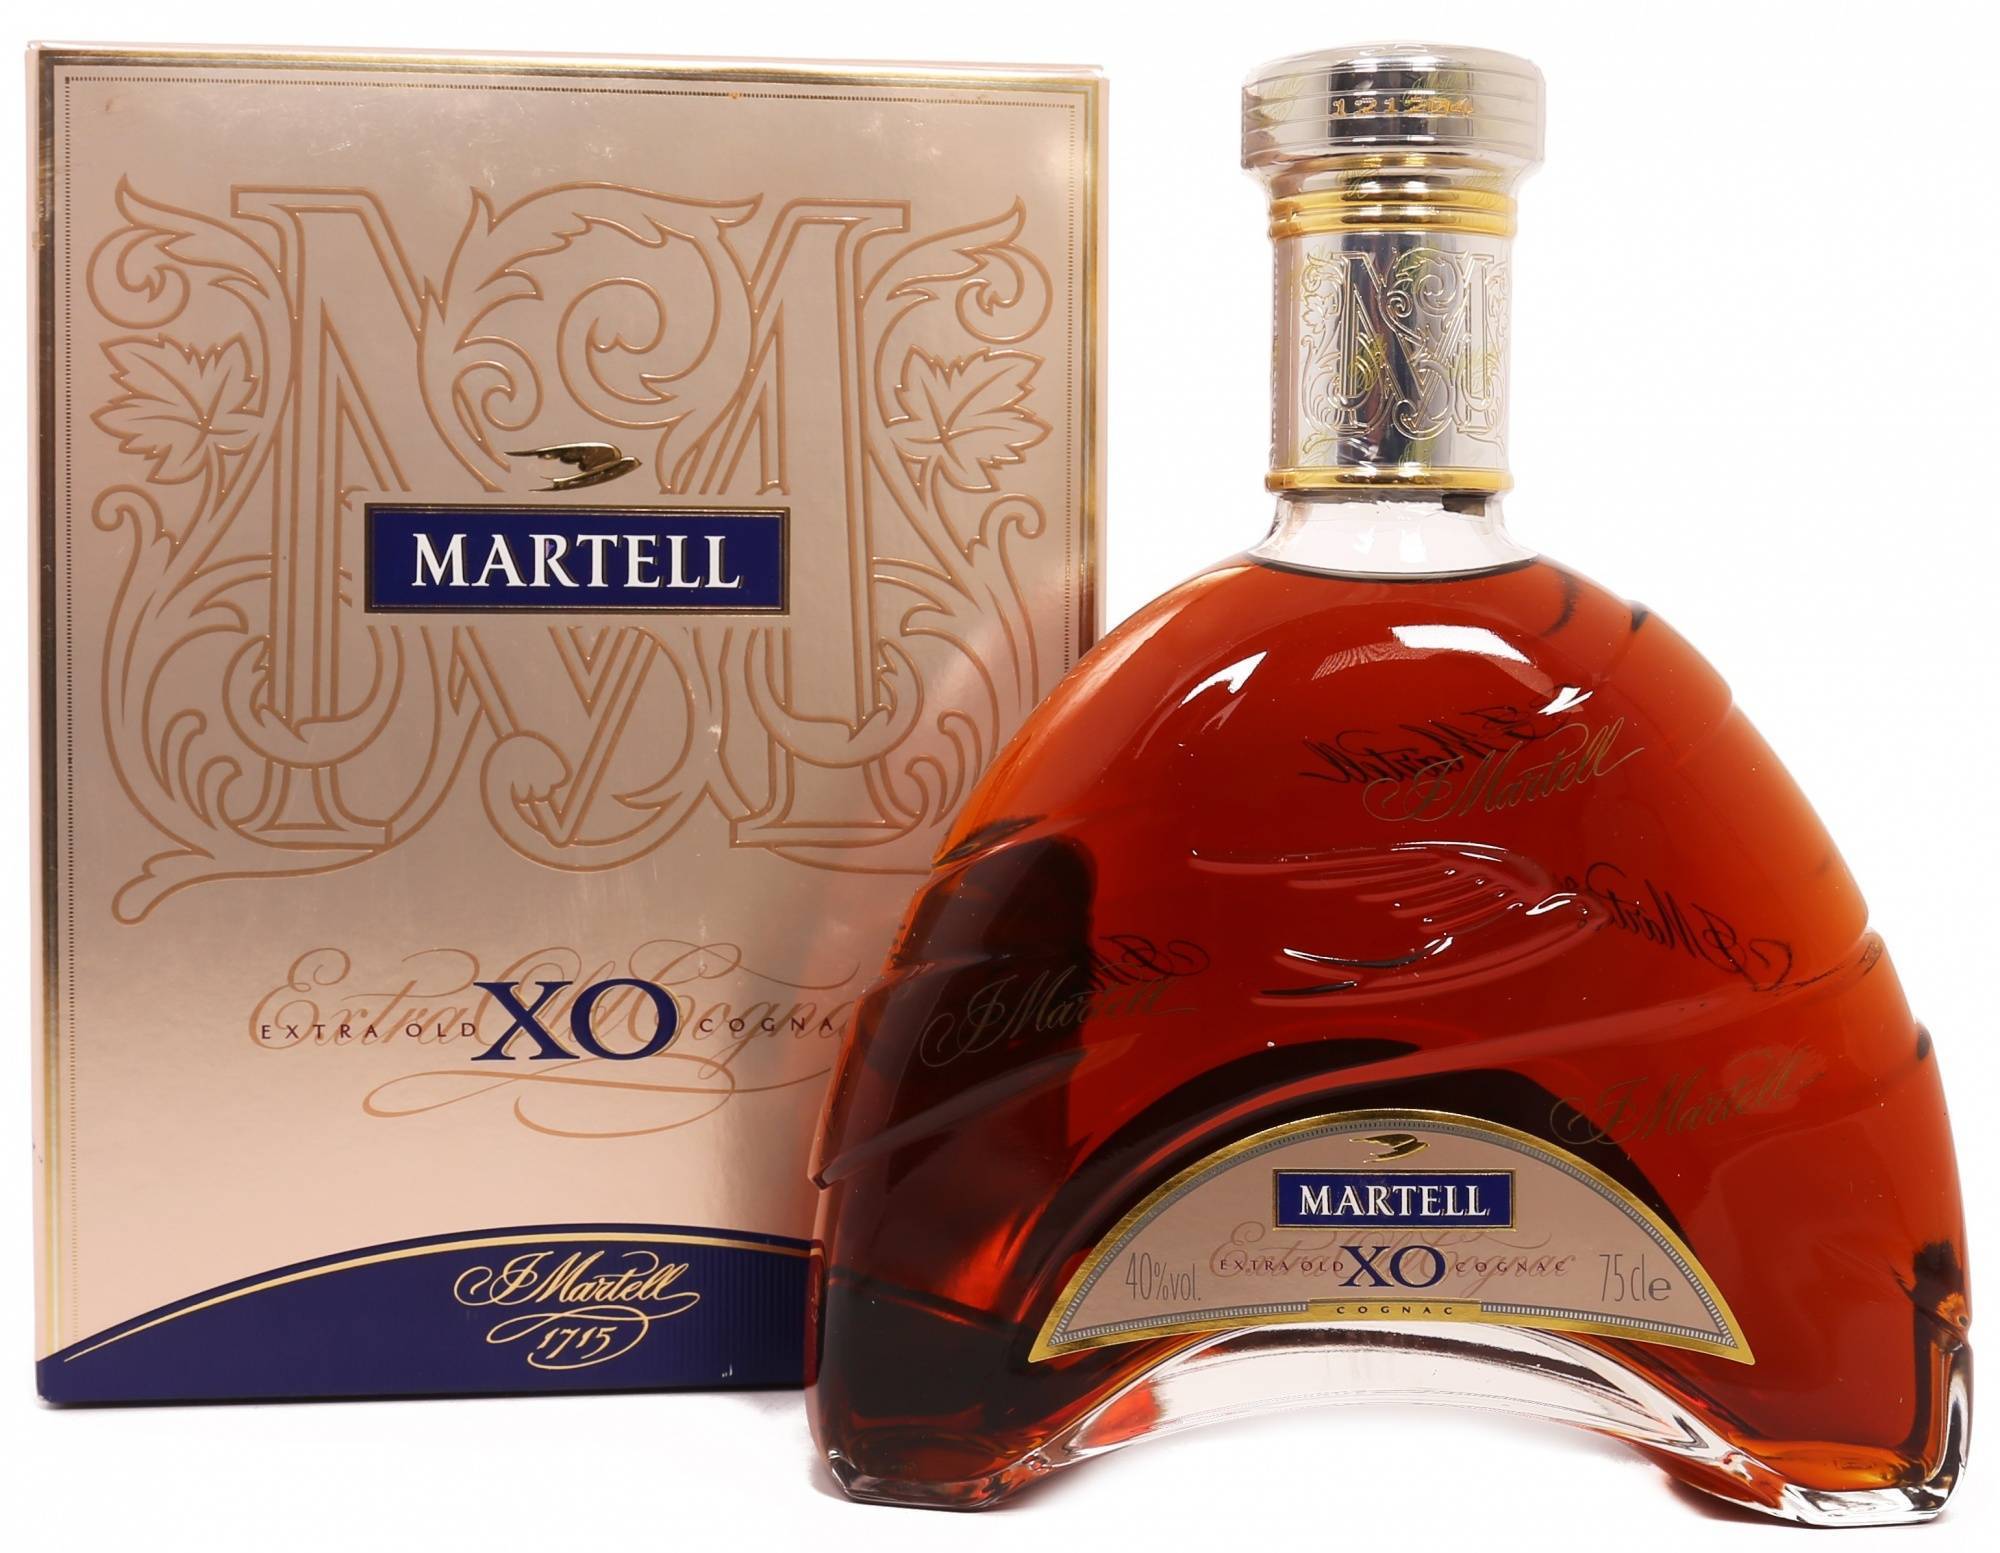 Martell vs: описание коньяка, производитель и особенности изготовления cognac, разновидности напитка